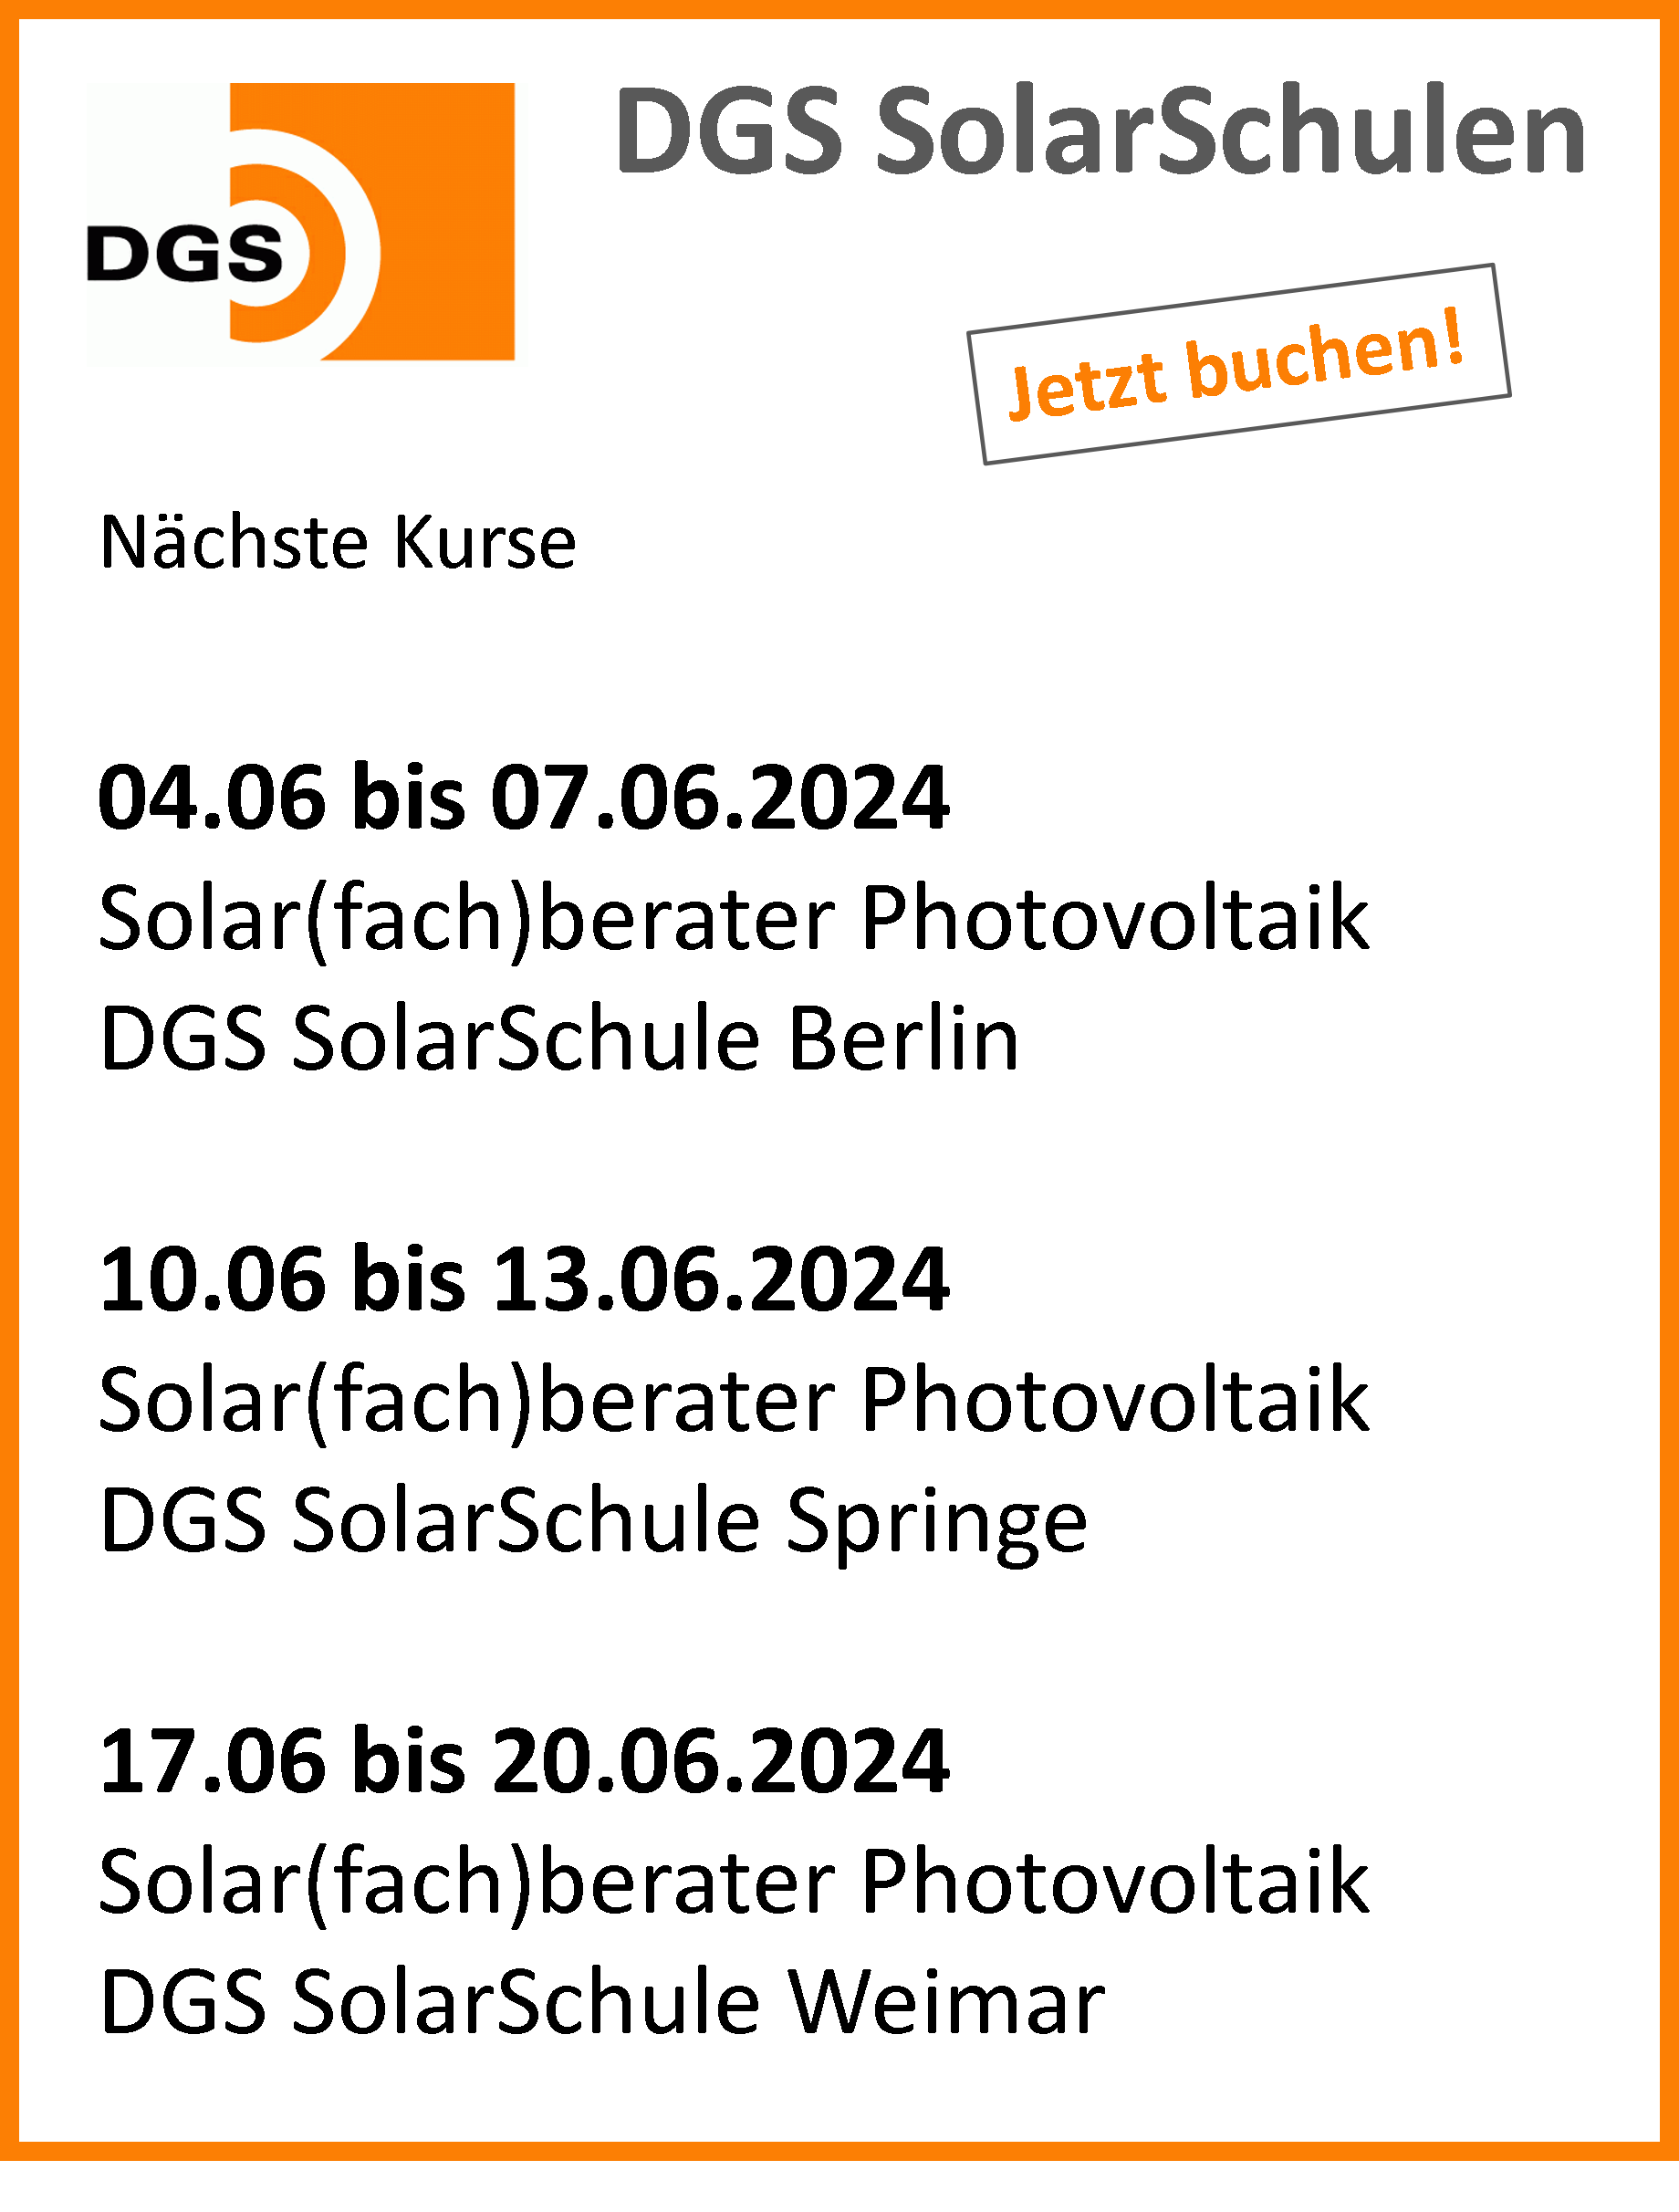 DGS SolarSchulen